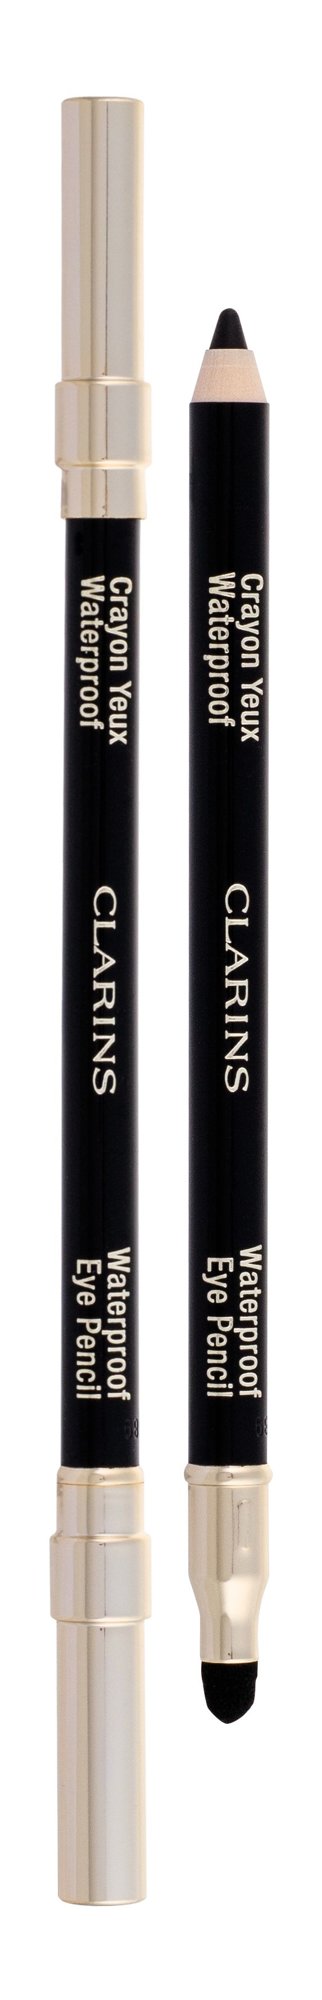 Clarins Eye Pencil akių pieštukas